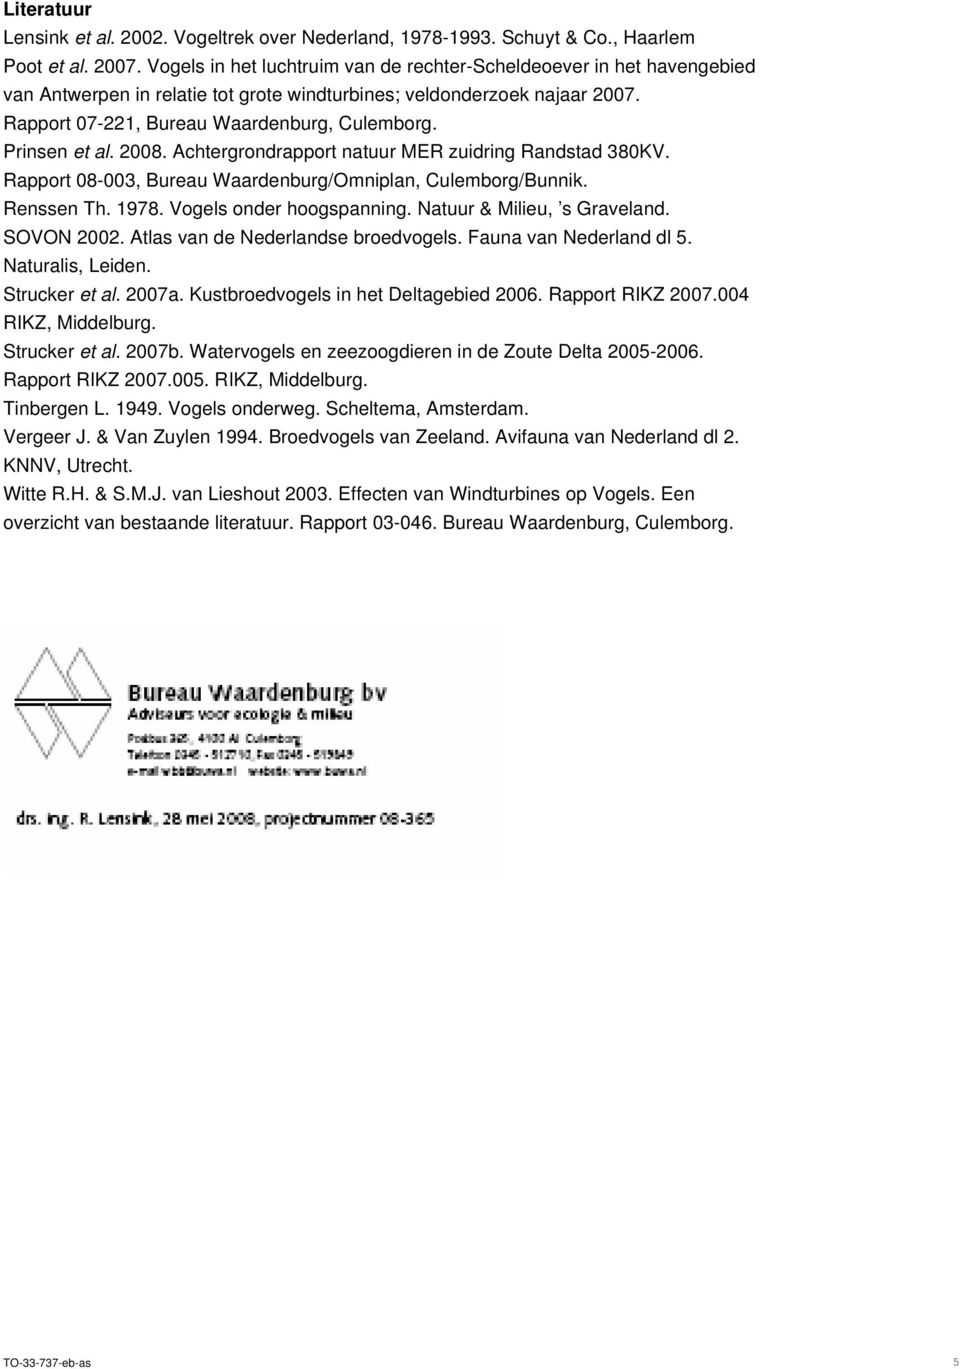 Prinsen et al. 2008. Achtergrondrapport natuur MER zuidring Randstad 380KV. Rapport 08-003, Bureau Waardenburg/Omniplan, Culemborg/Bunnik. Renssen Th. 1978. Vogels onder hoogspanning.